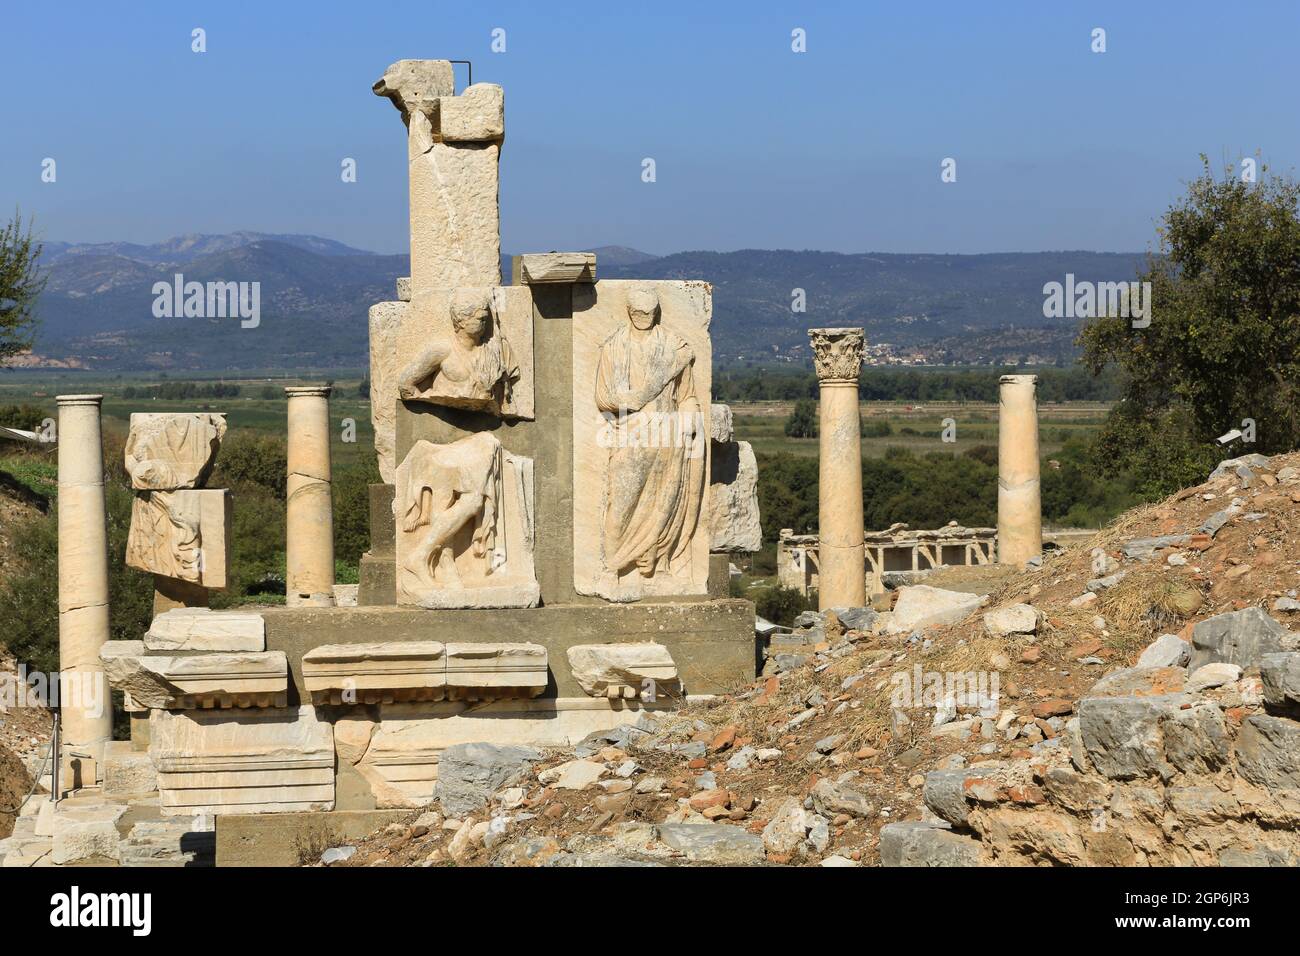 Le monument Memmius célèbre le héros romain Sulla qui a dirigé une armée romaine pour restaurer Éphèse au pouvoir romain après qu'elle soit tombée aux armées Pontiques en 87 av. J.-C. Banque D'Images